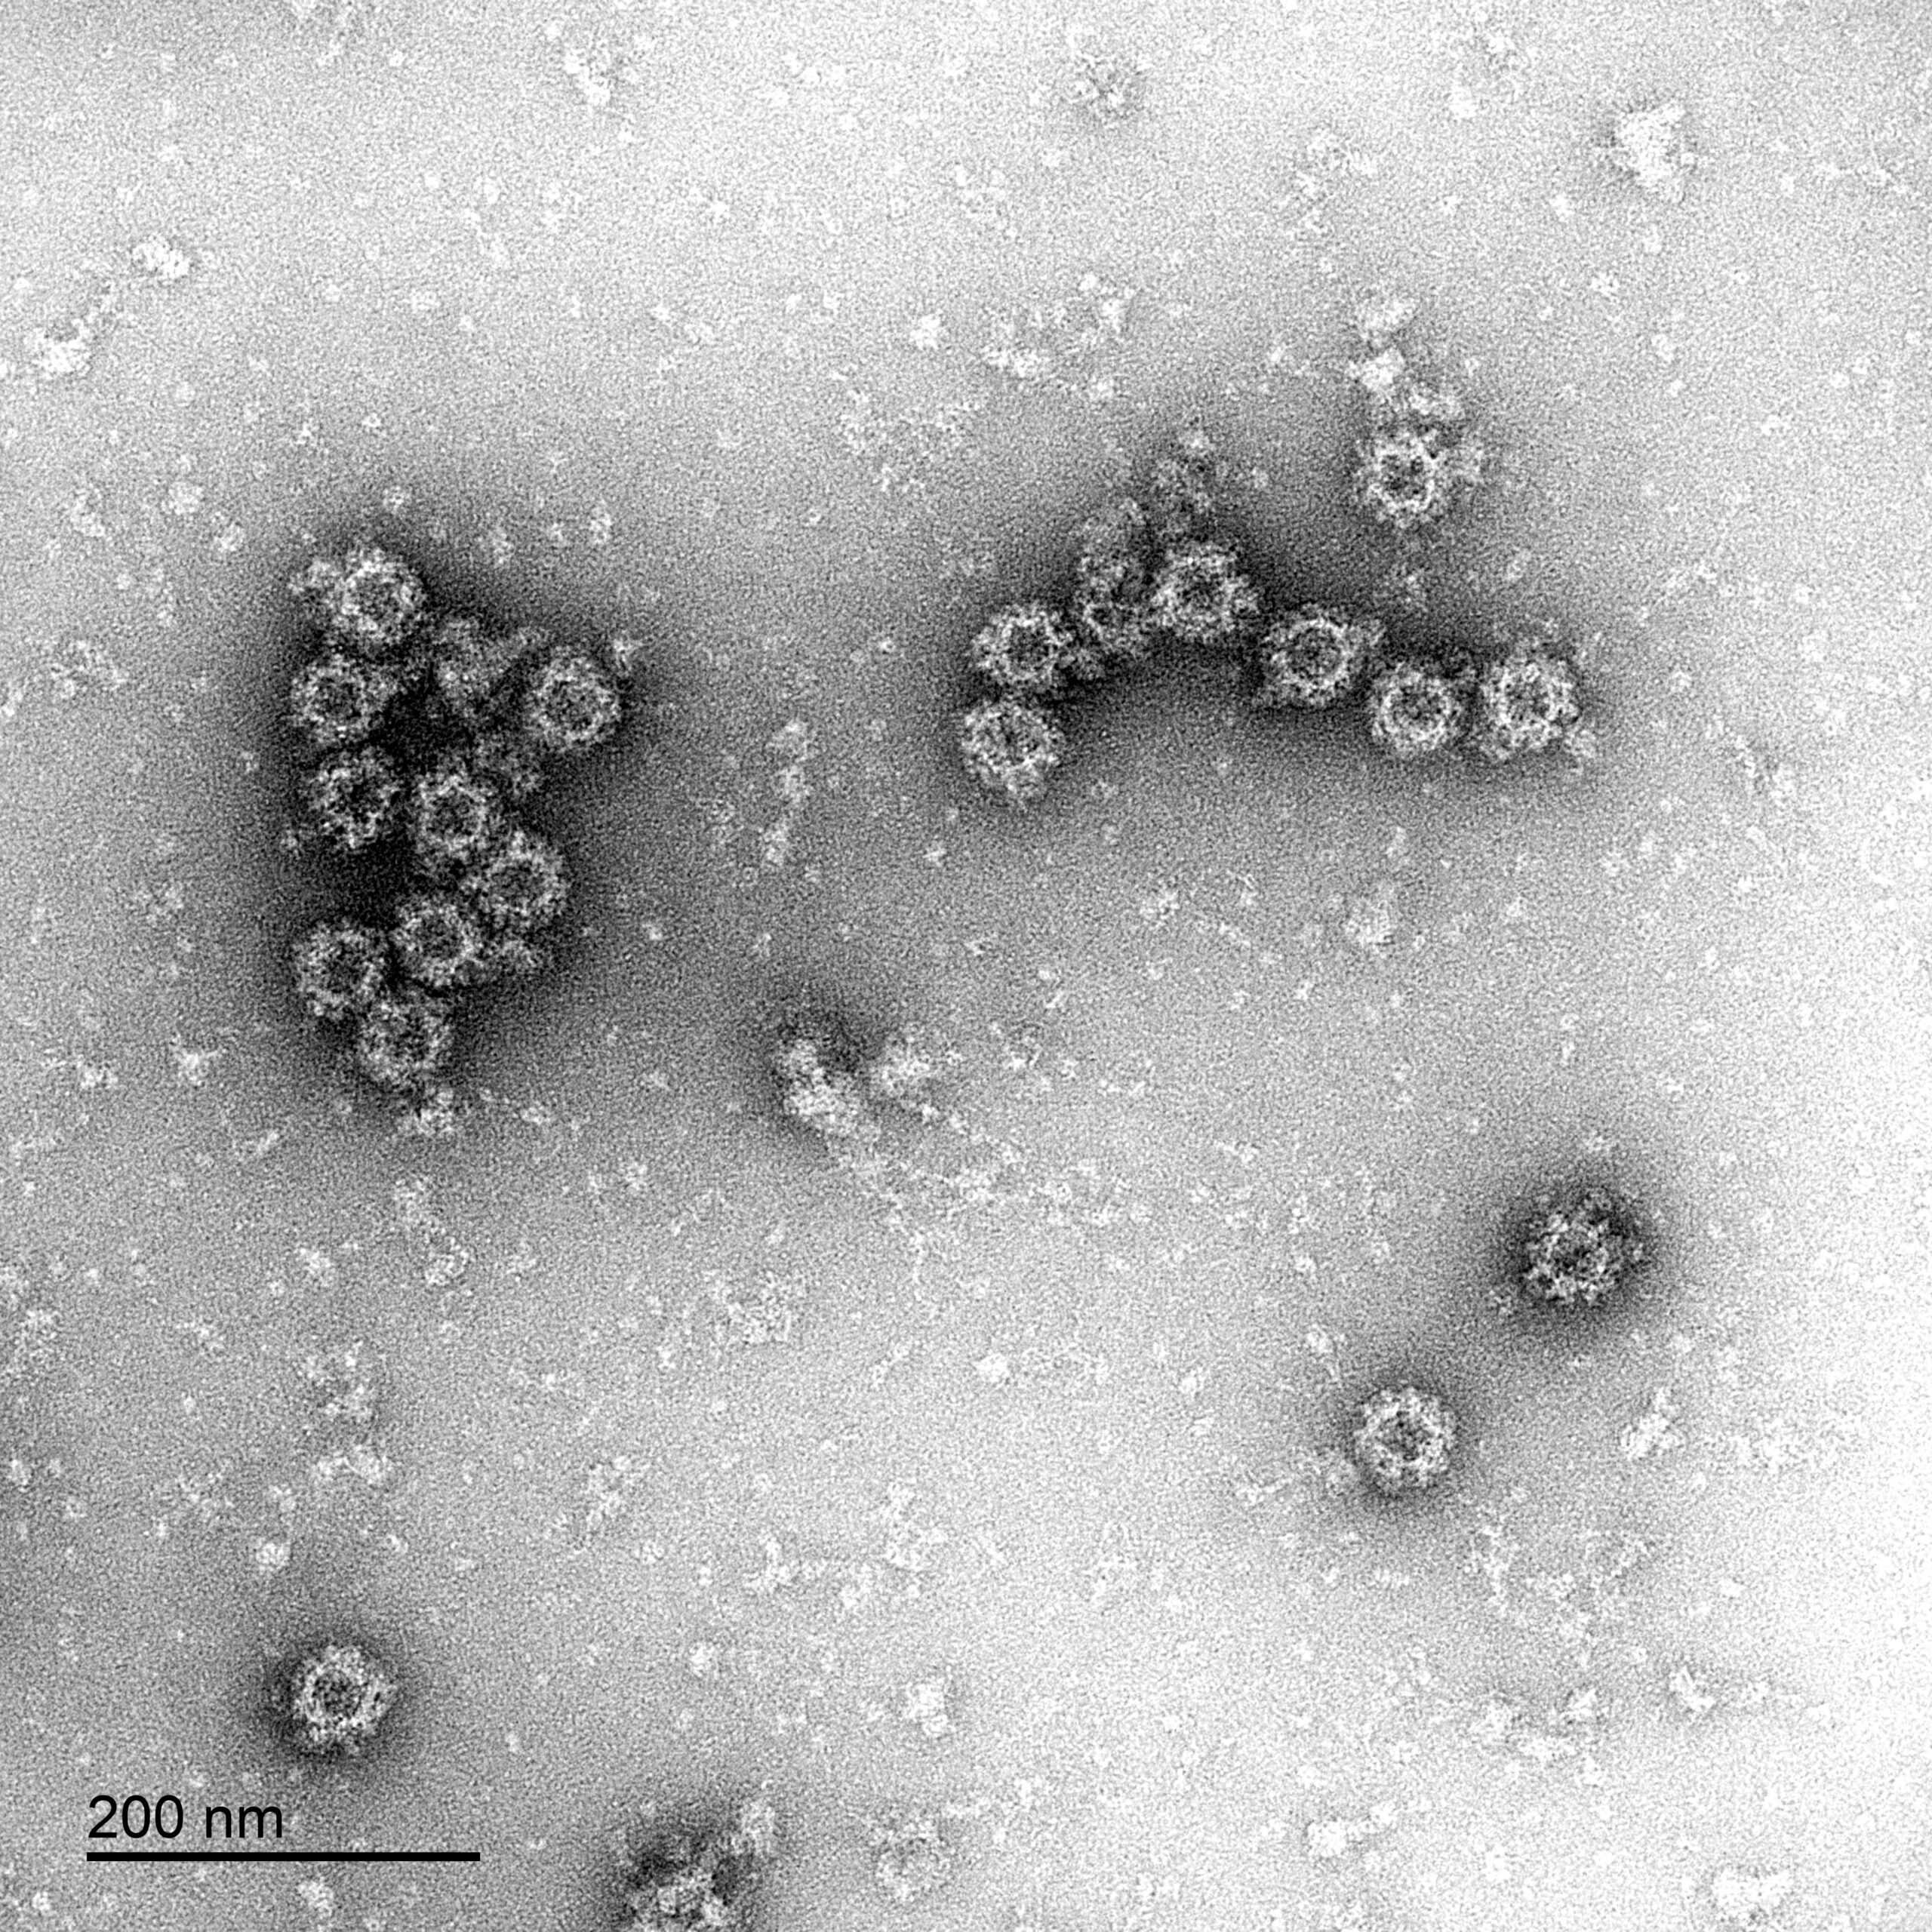 Norovirus GI.1 VLP